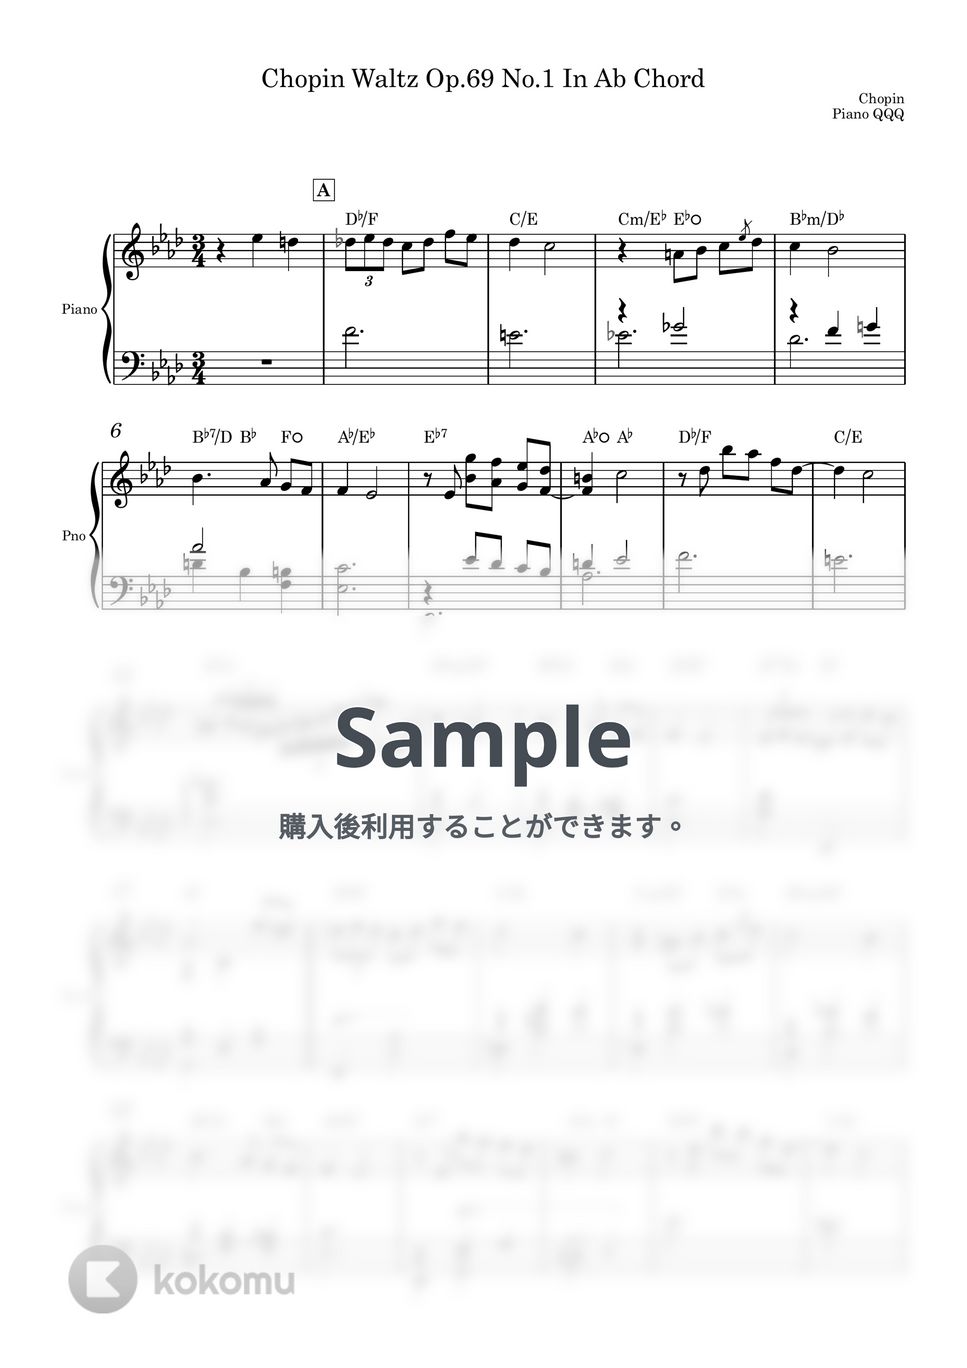 ショパン - ショパン ワルツ Op.69 No.1 (ピアノソロのための楽譜) by Piano QQQ